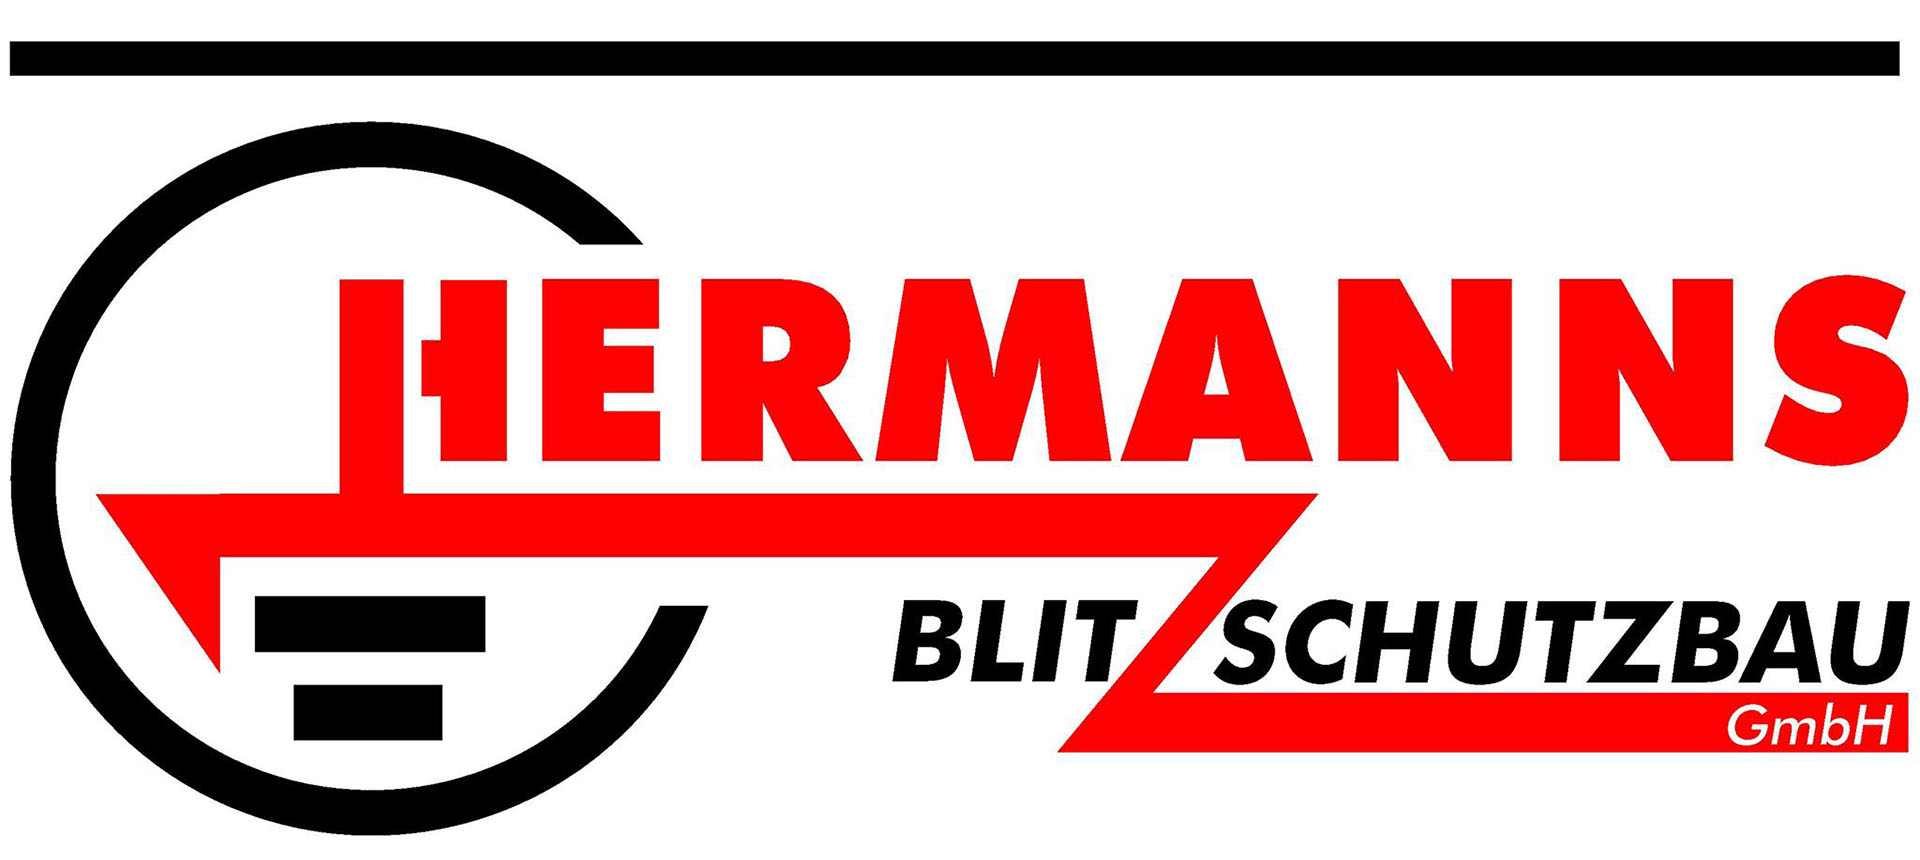 Blitzschutz Hermanns